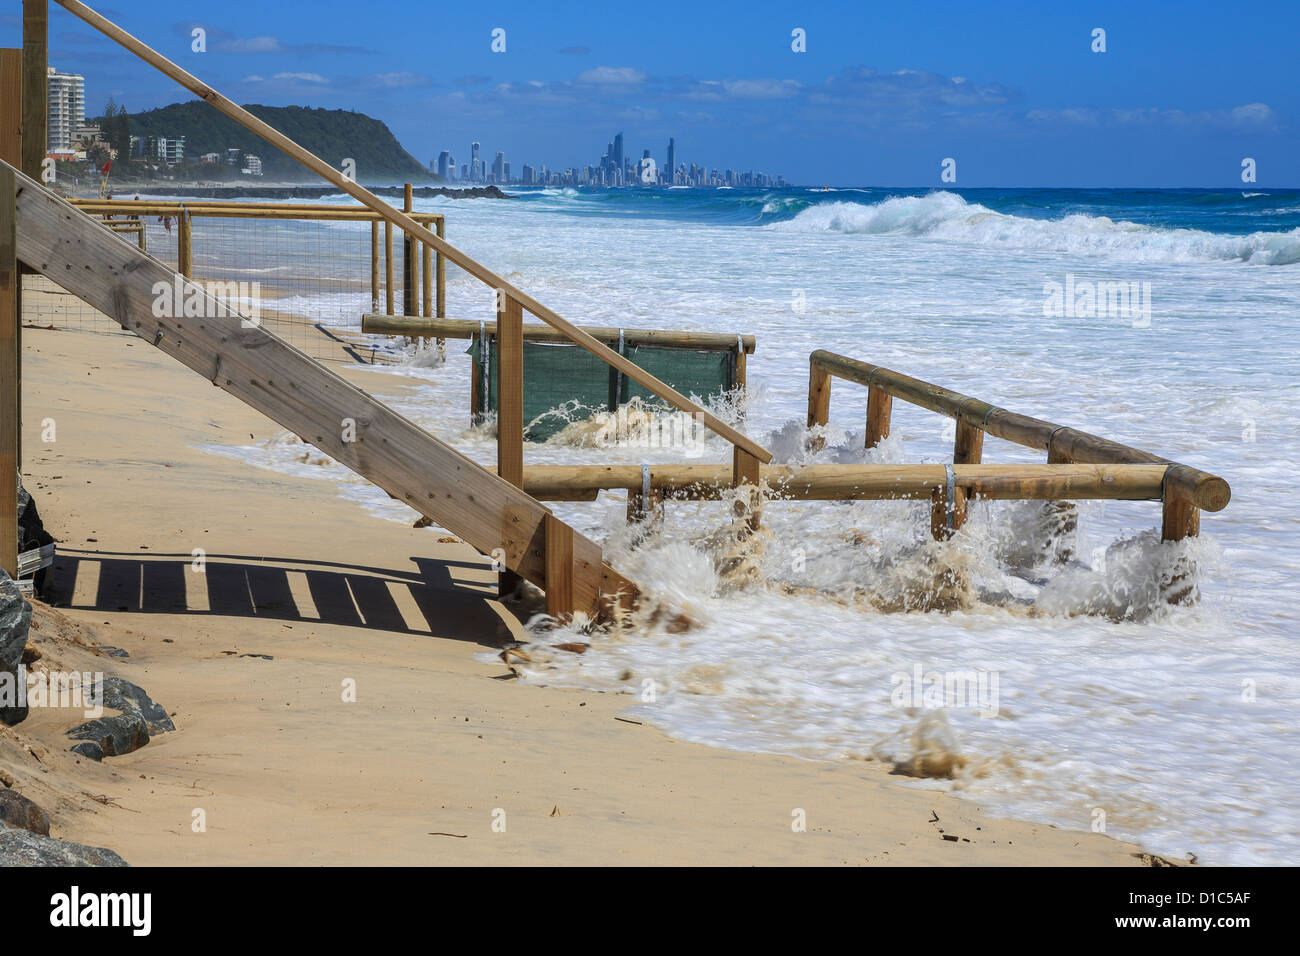 El calentamiento global combinada con la alta marea de tormenta y oleaje provoca alta mar a erosionar la propiedad frente a la playa. Foto de stock